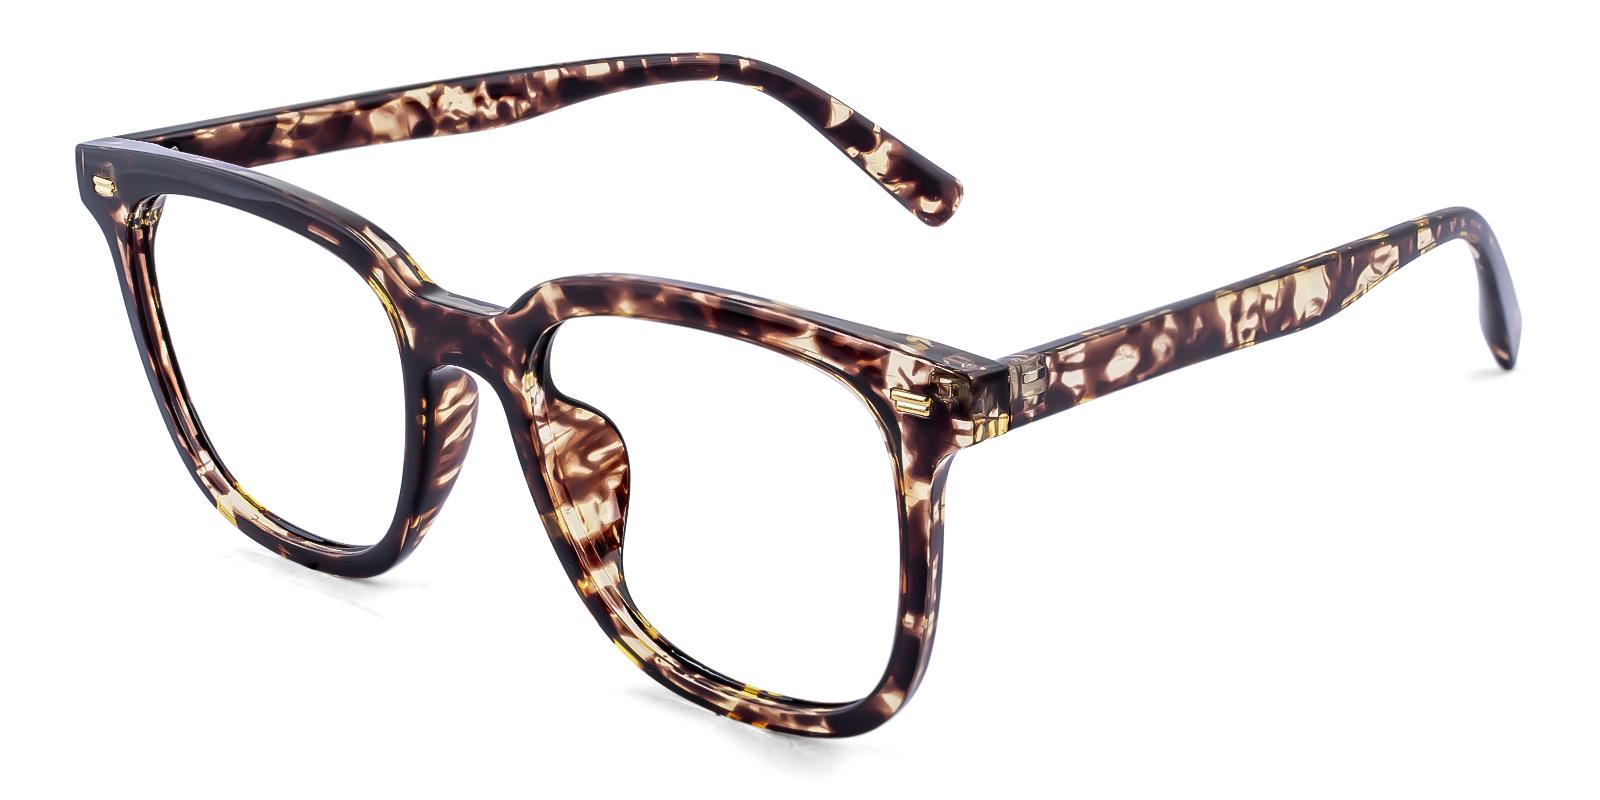 Horta Tortoise TR Eyeglasses , UniversalBridgeFit Frames from ABBE Glasses